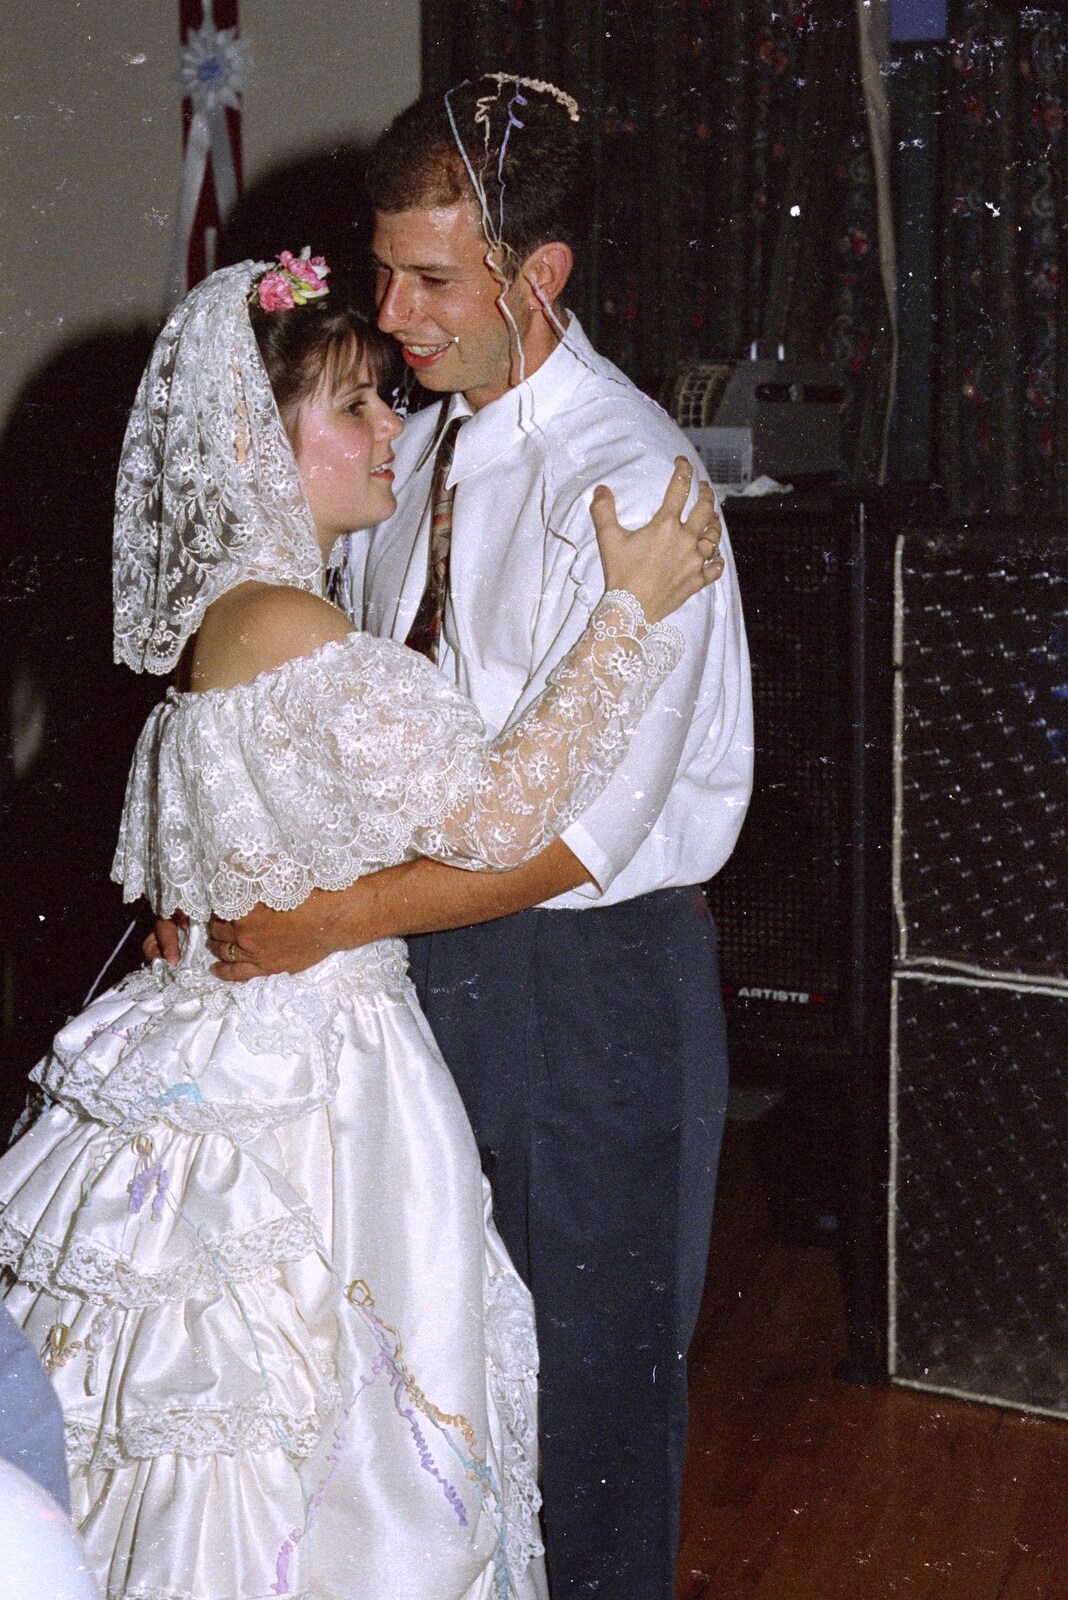 A wedding dance from Printec Kelly's Wedding, Eye, Suffolk - 25th April 1992